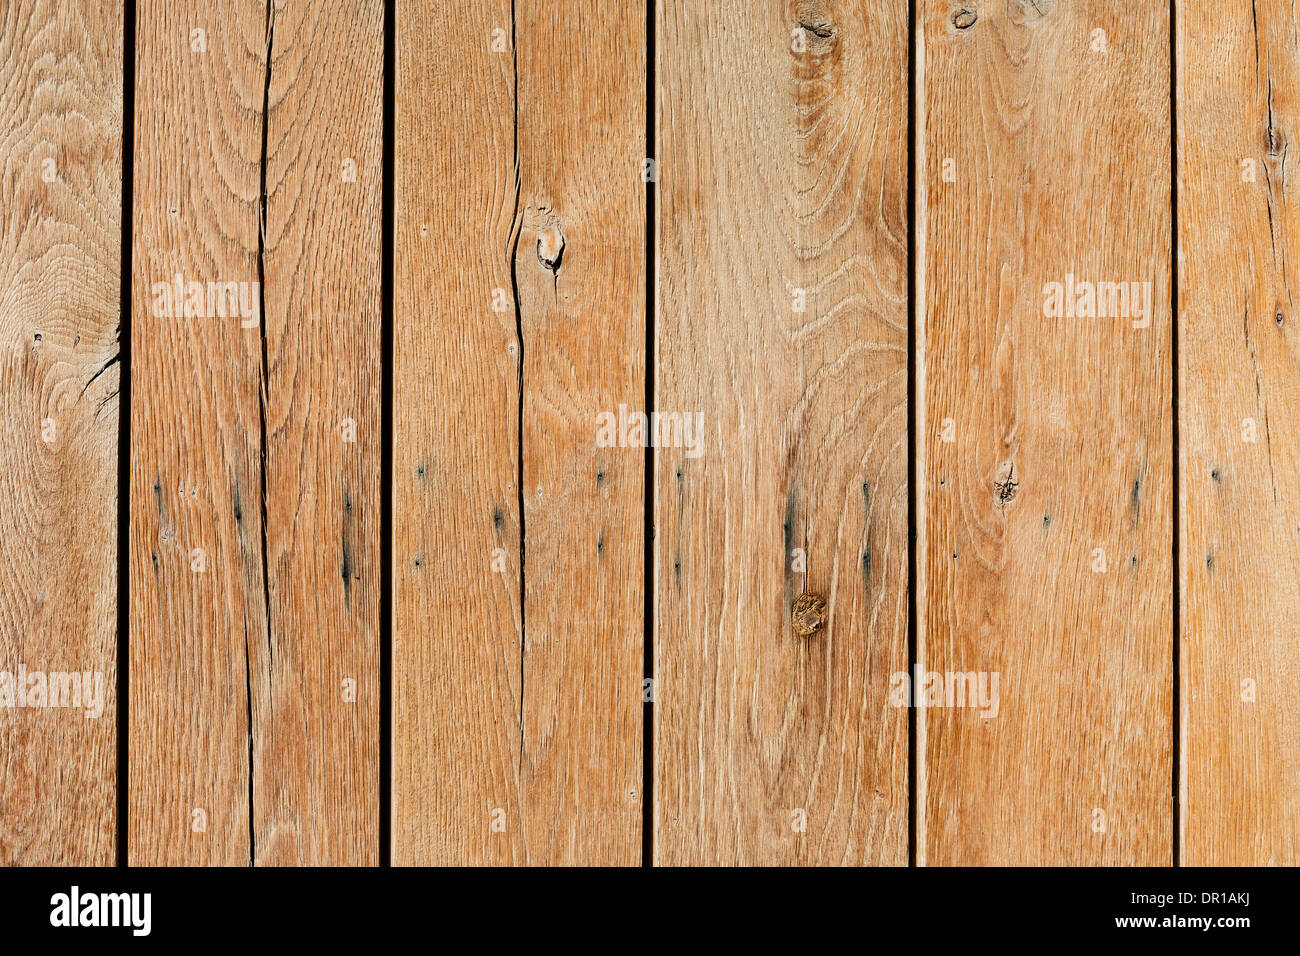 In legno tavole di pino giacente insieme in color marrone con linee e gli anelli annuali Foto Stock